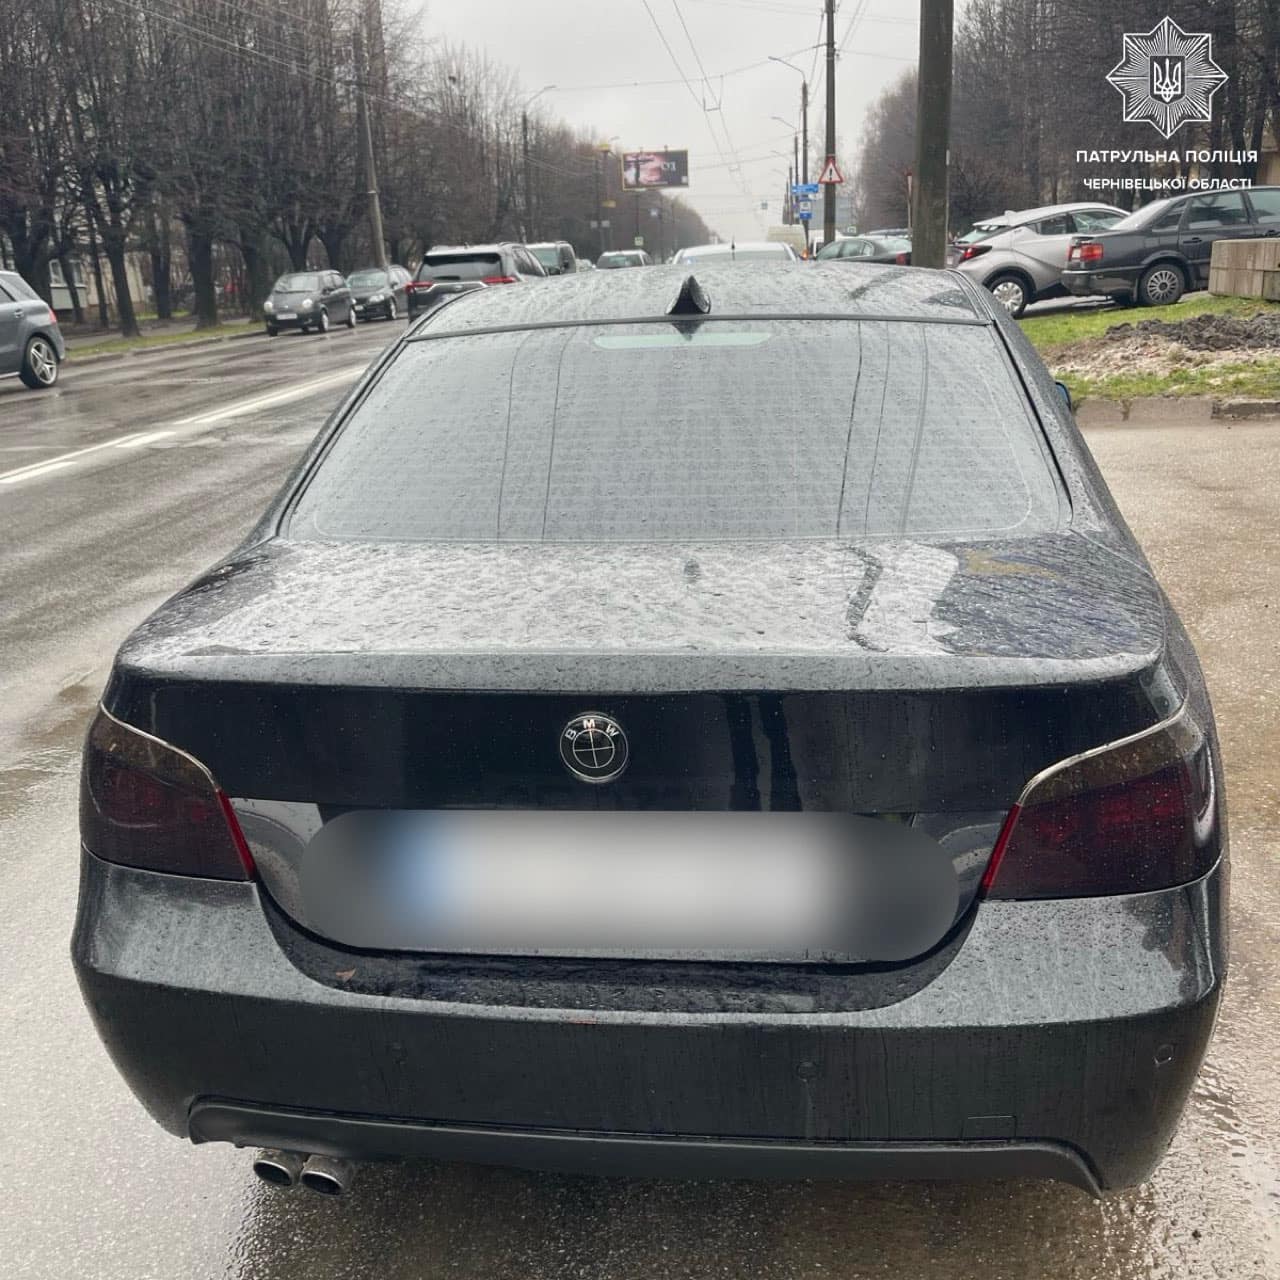 Патрульні поліцейські у Чернівцях затримали нетверезого водія